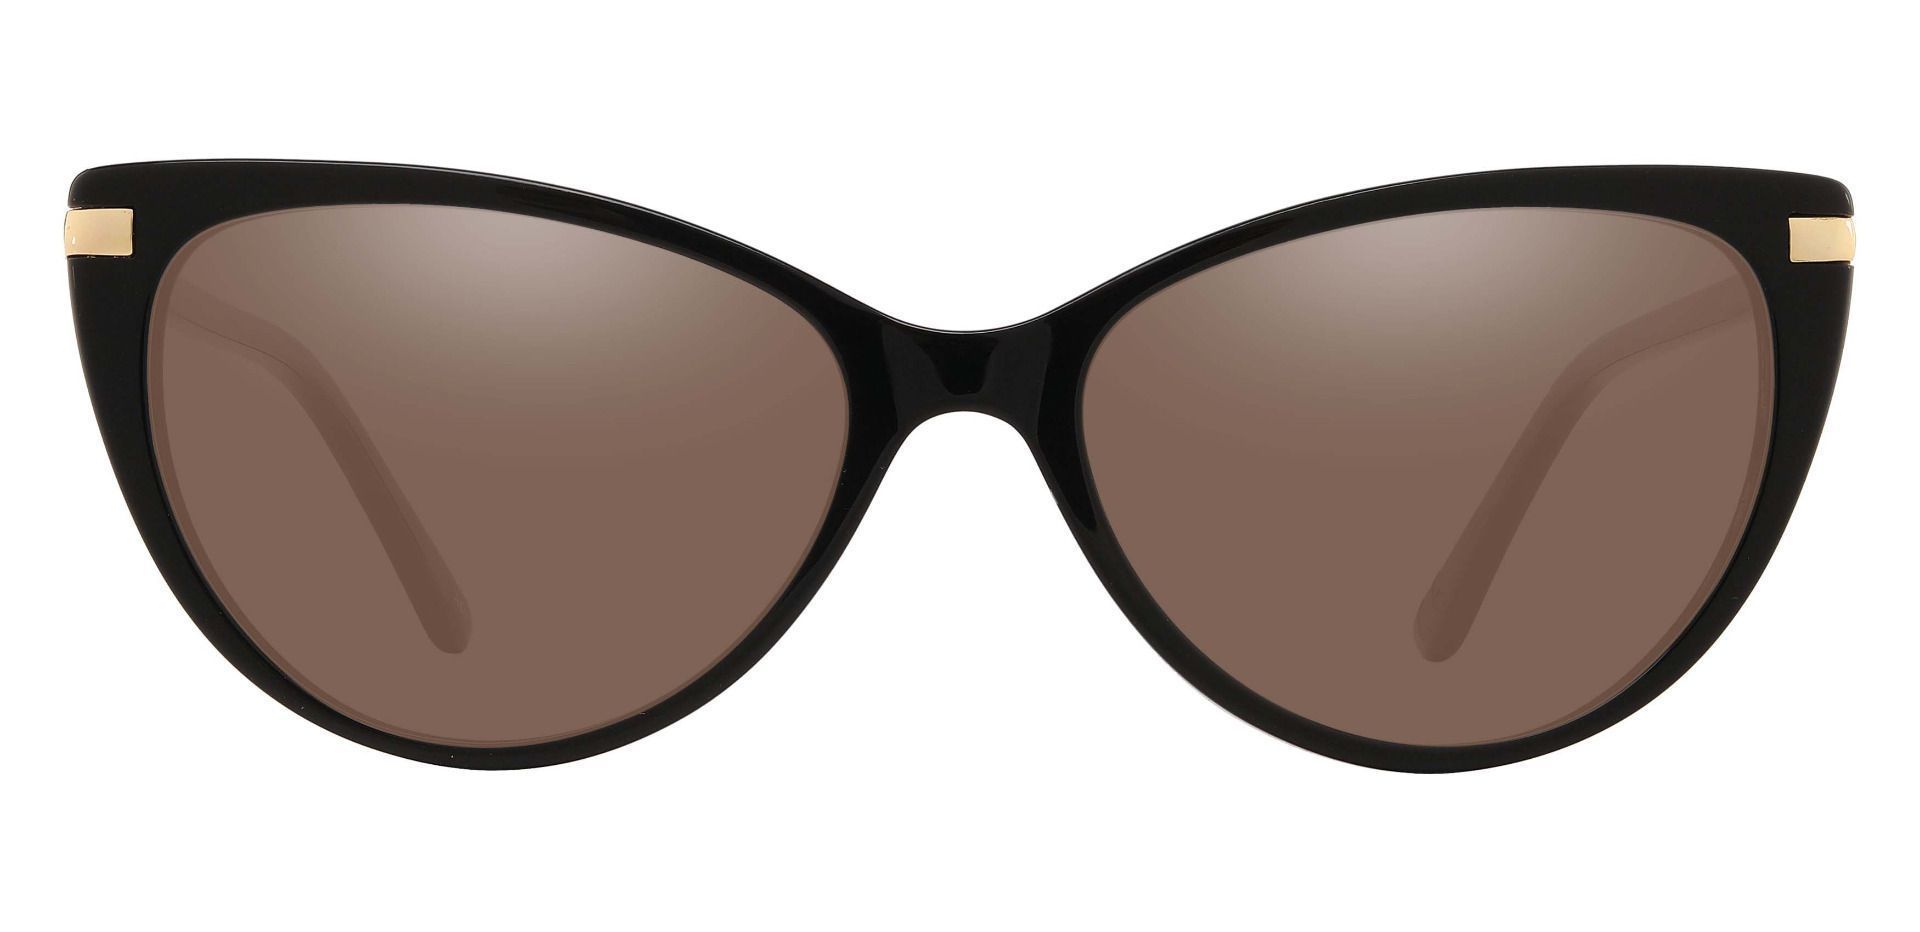 Starla Cat Eye Progressive Sunglasses - Black Frame With Brown Lenses